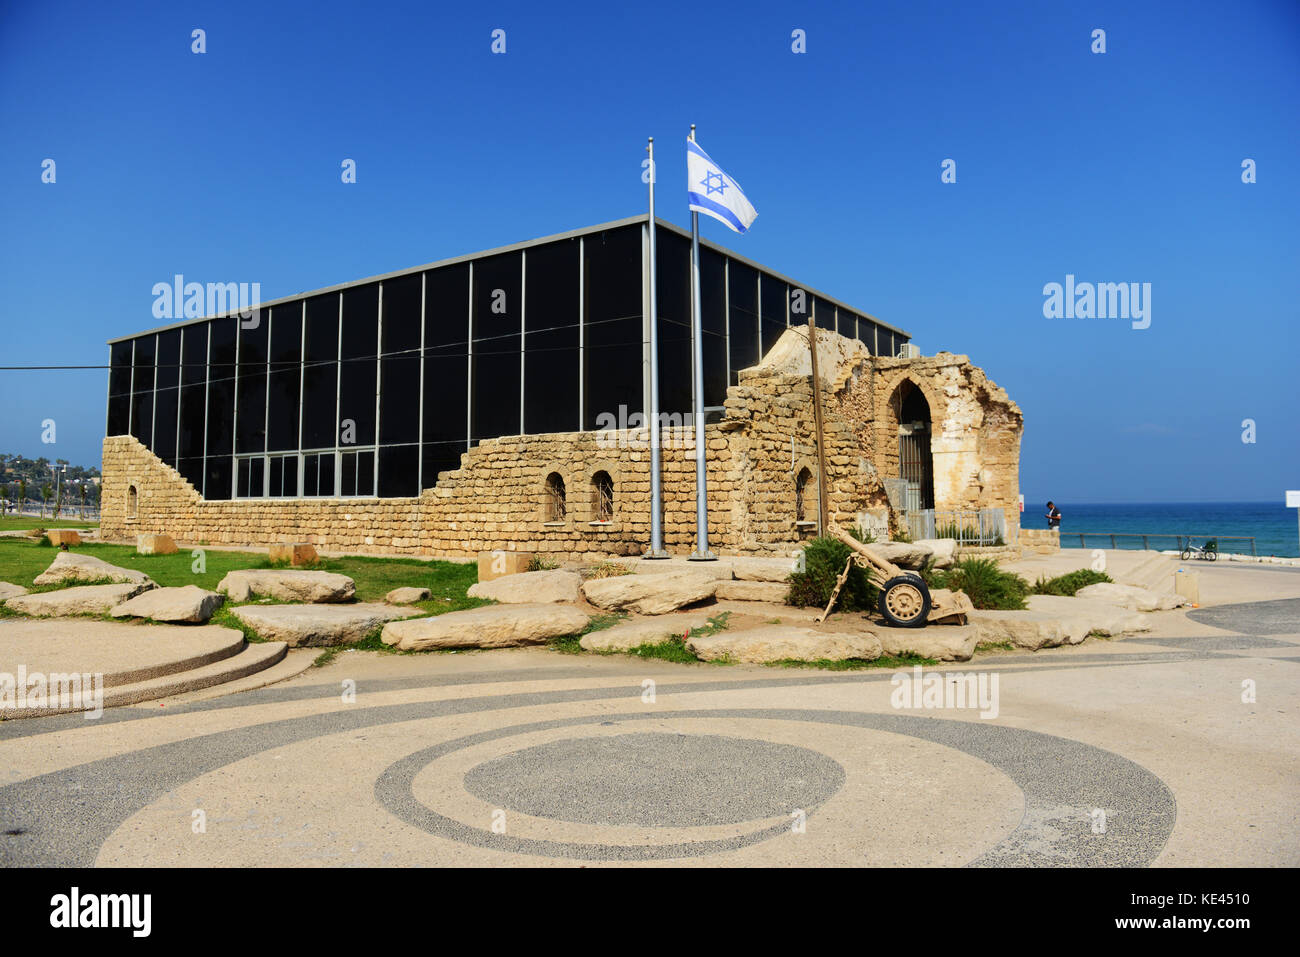 El museo Etzel en el paseo marítimo de Tel Aviv. Foto de stock